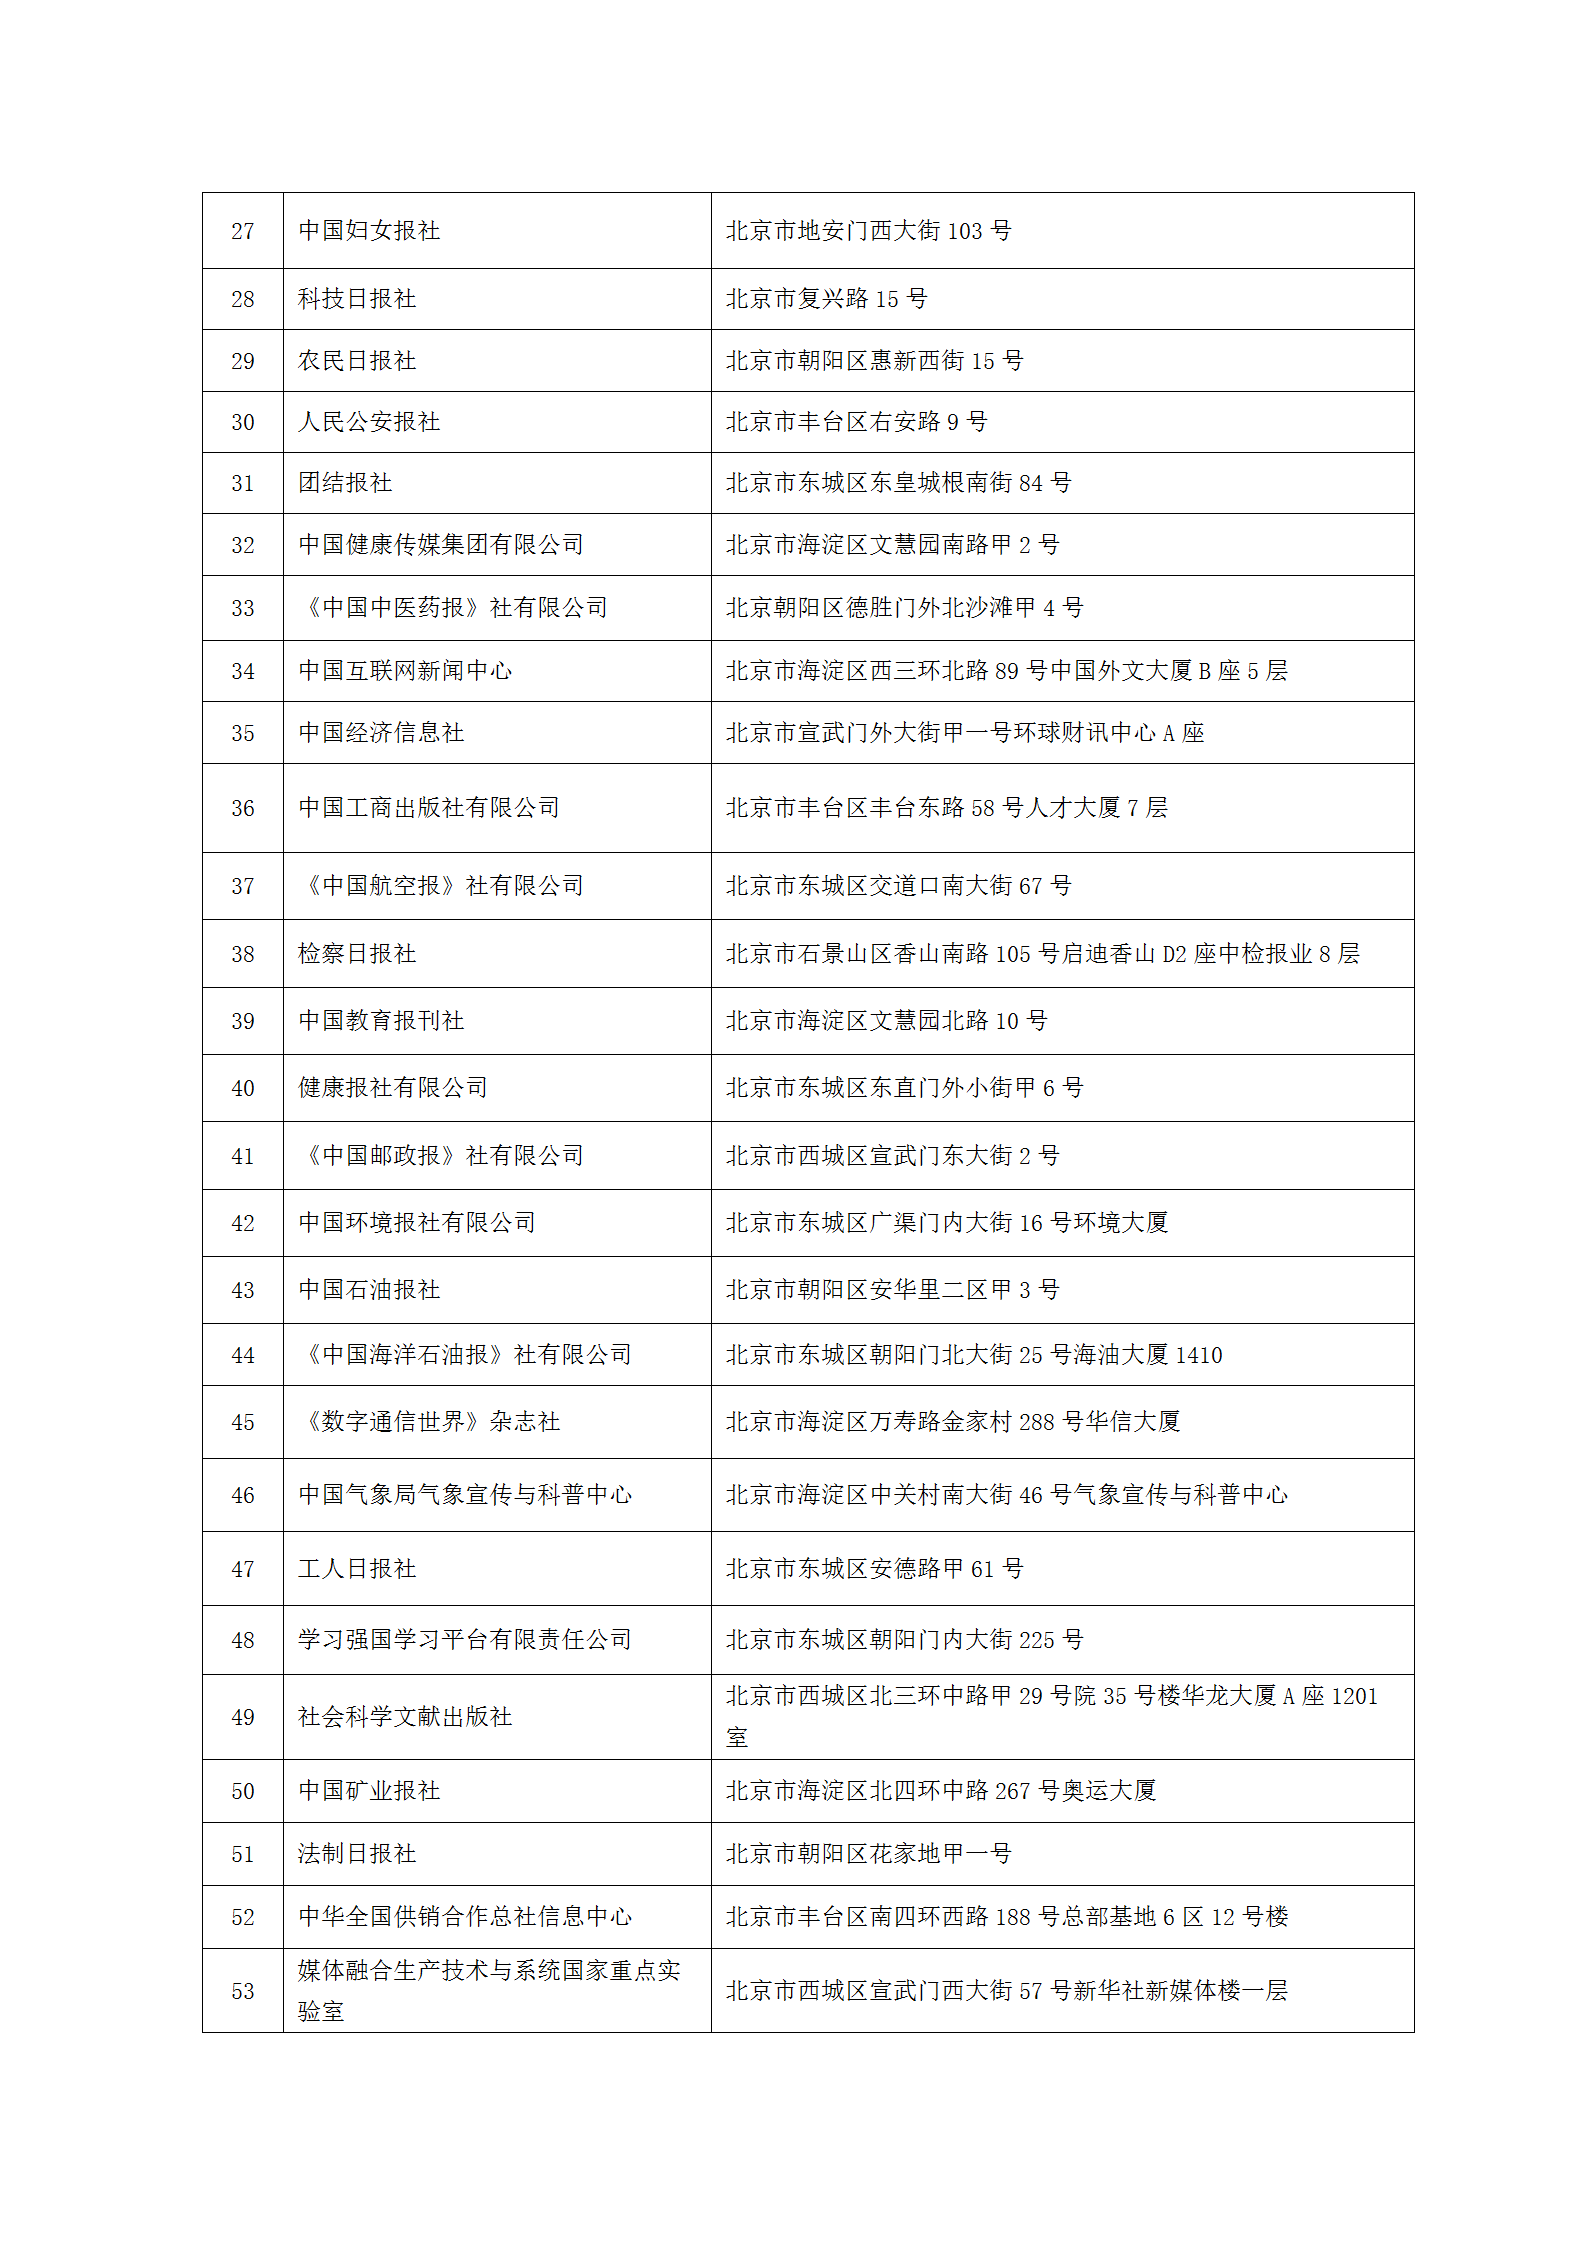 中国新闻技术工作者联合会第七届会员单位-2023.9.10(1)_02.png